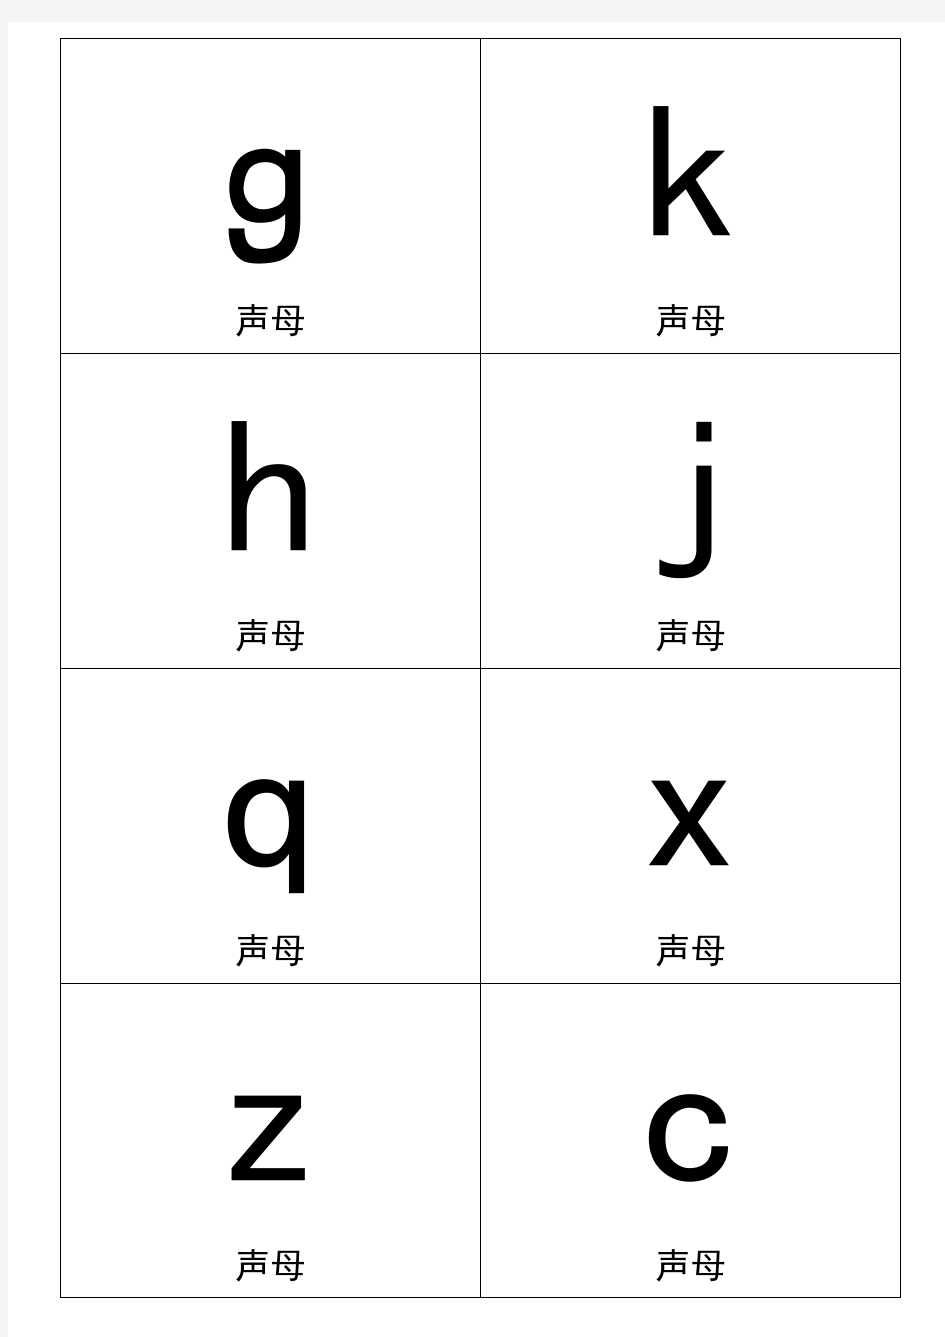 2020小学语文一年级汉语拼音卡片打印版(A4纸拼音卡片)